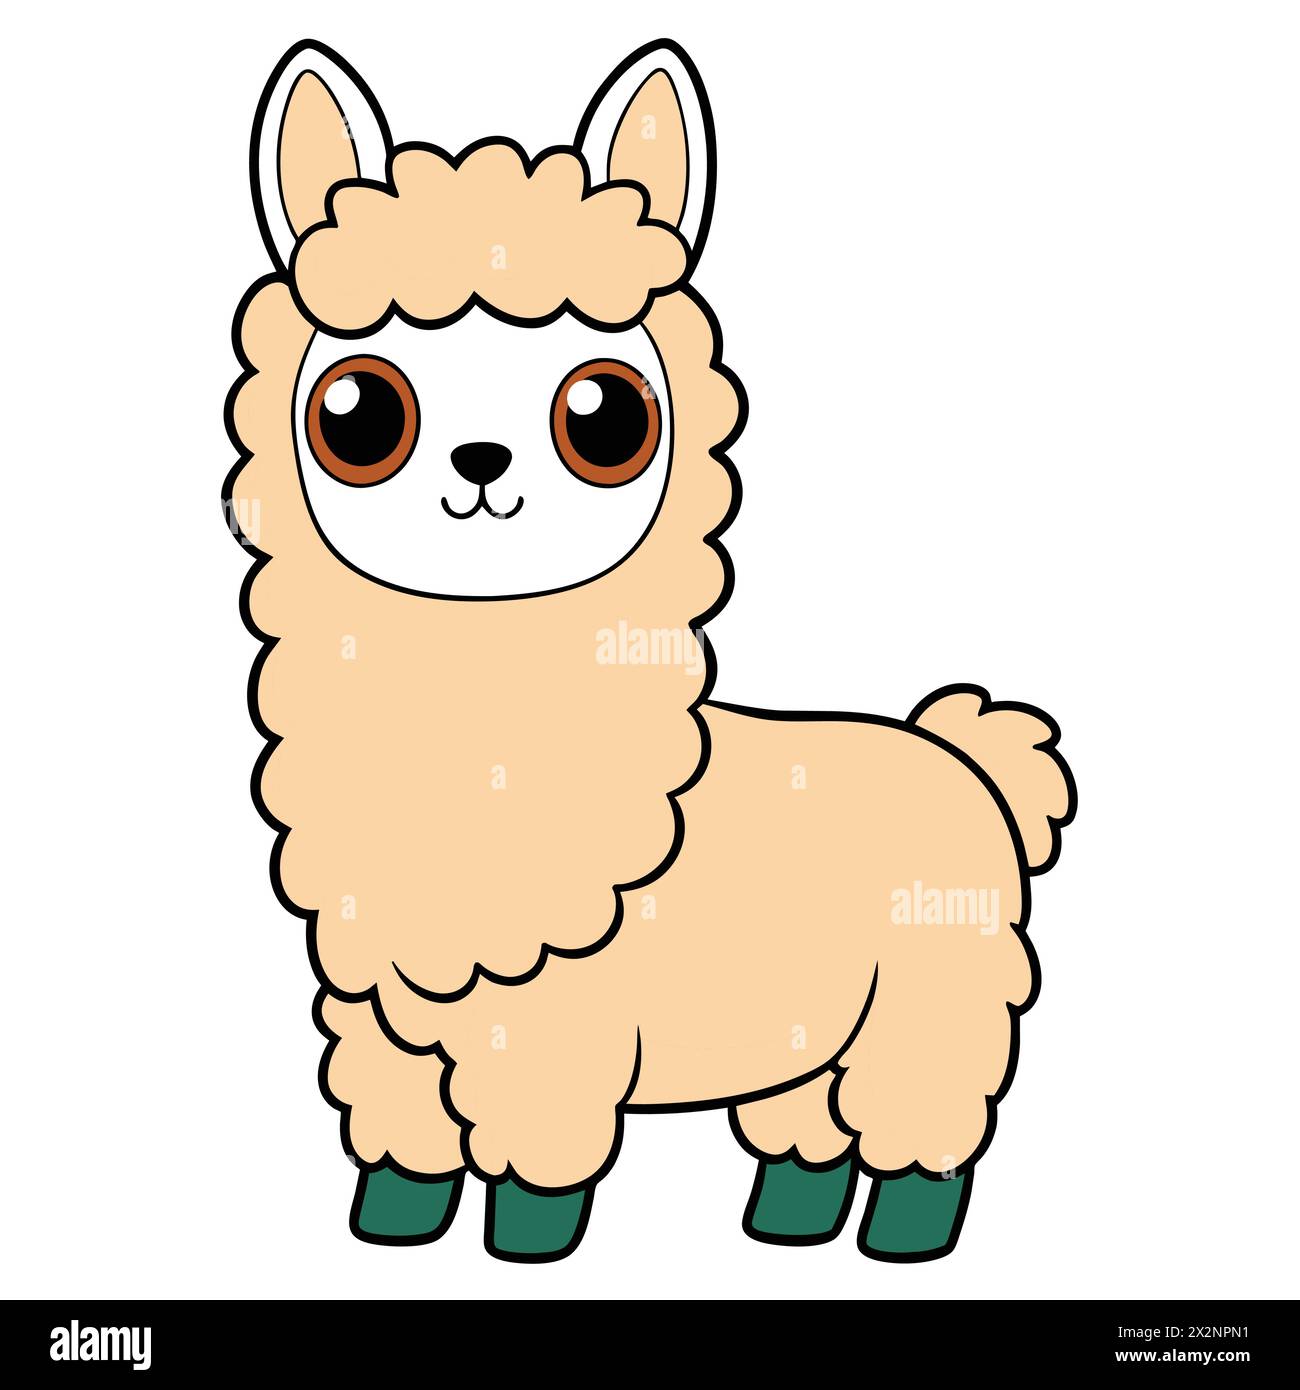 Avventura andina: Adorabili Llamas, perfetti per libri per bambini carte inviti loghi Web Design T-shirt biglietti di auguri cartoleria imballaggio tatuaggio Illustrazione Vettoriale